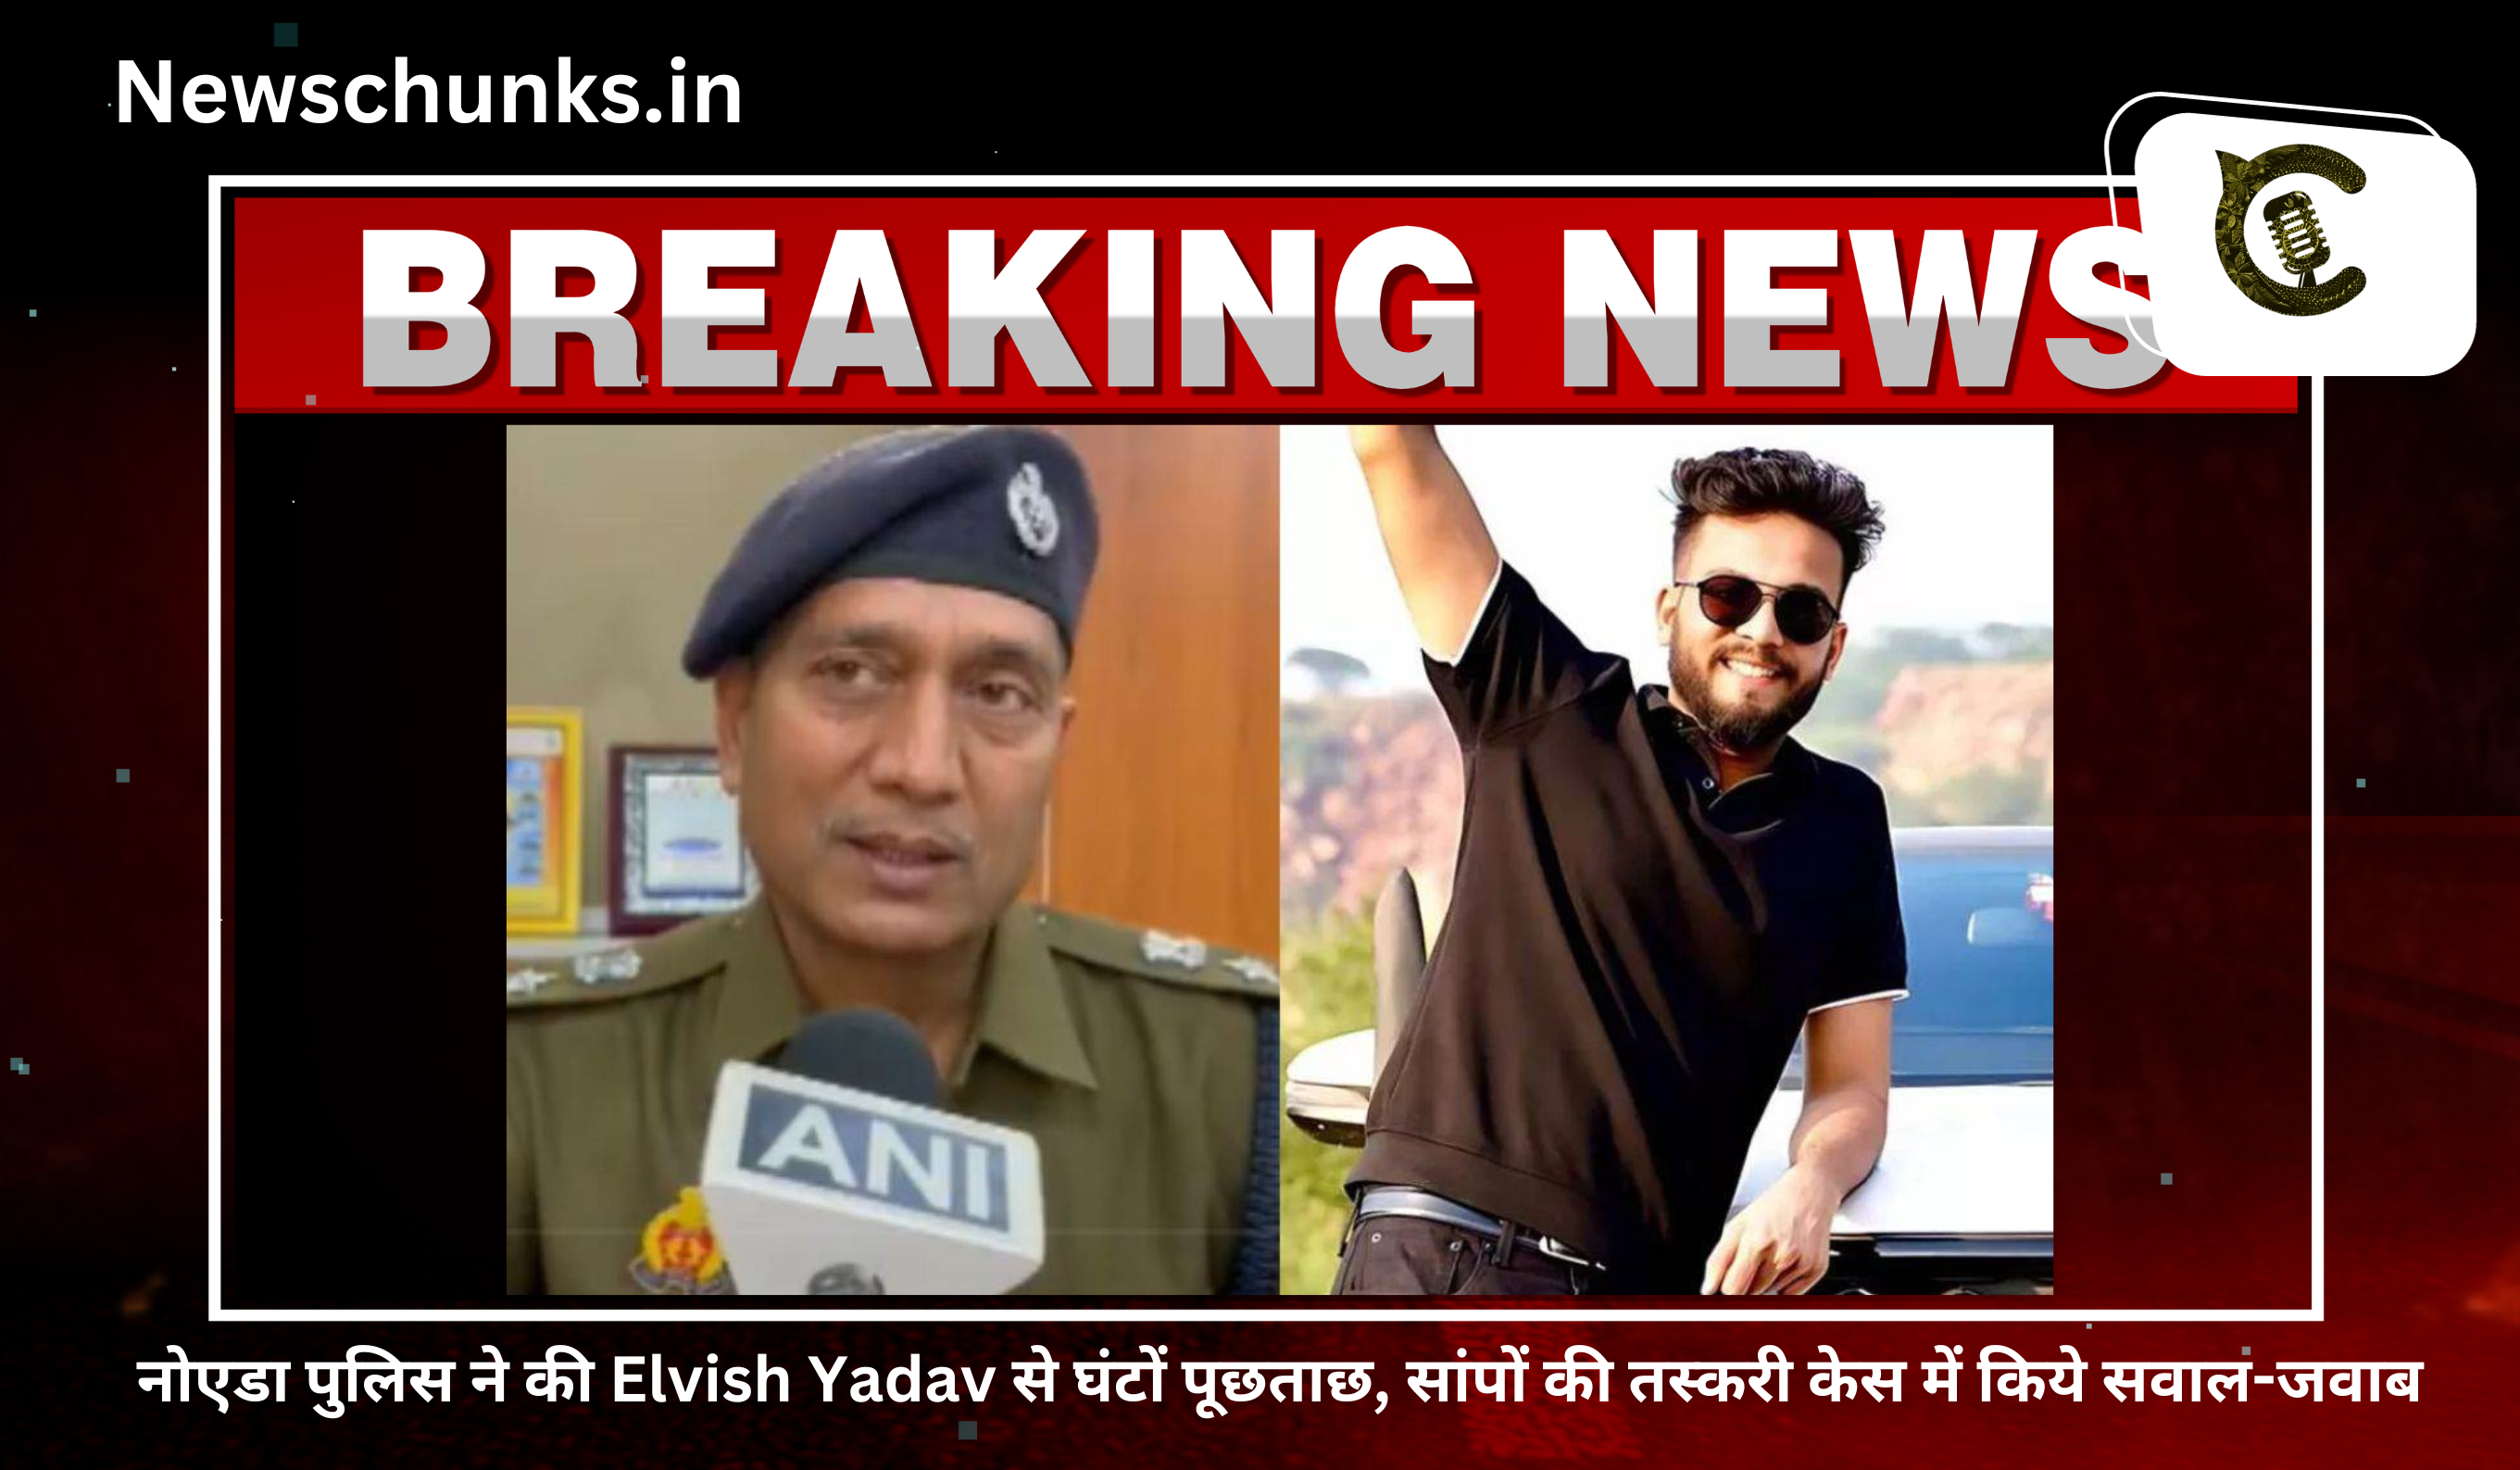 Noida Police interrogate Elvish Yadav?: नोएडा पुलिस ने की Elvish Yadav से घंटों पूछताछ, सांपों की तस्करी केस में किये सवाल-जवाब